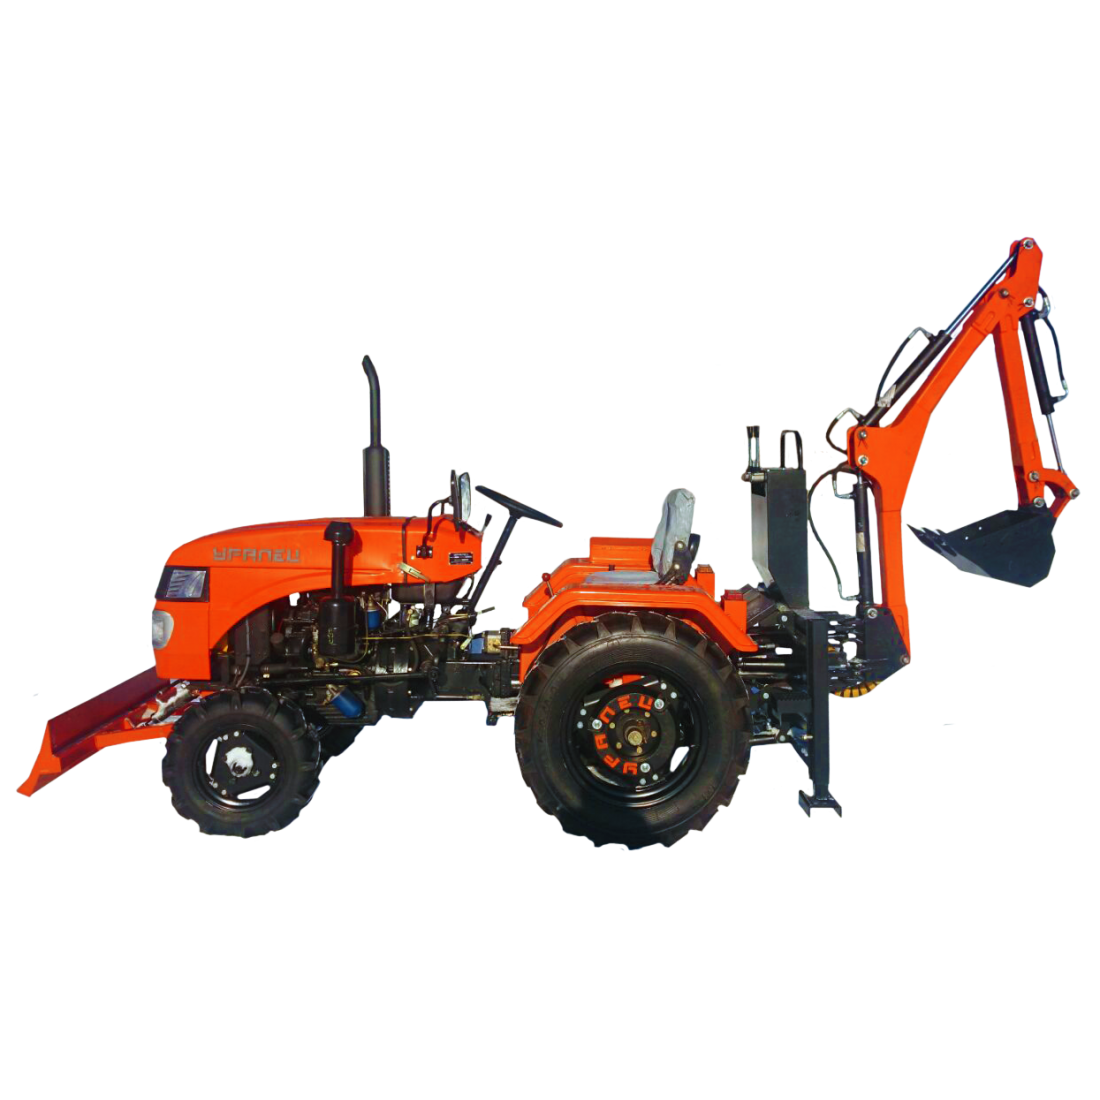 Мини-трактор уралец-220: отзывы, технические характеристики